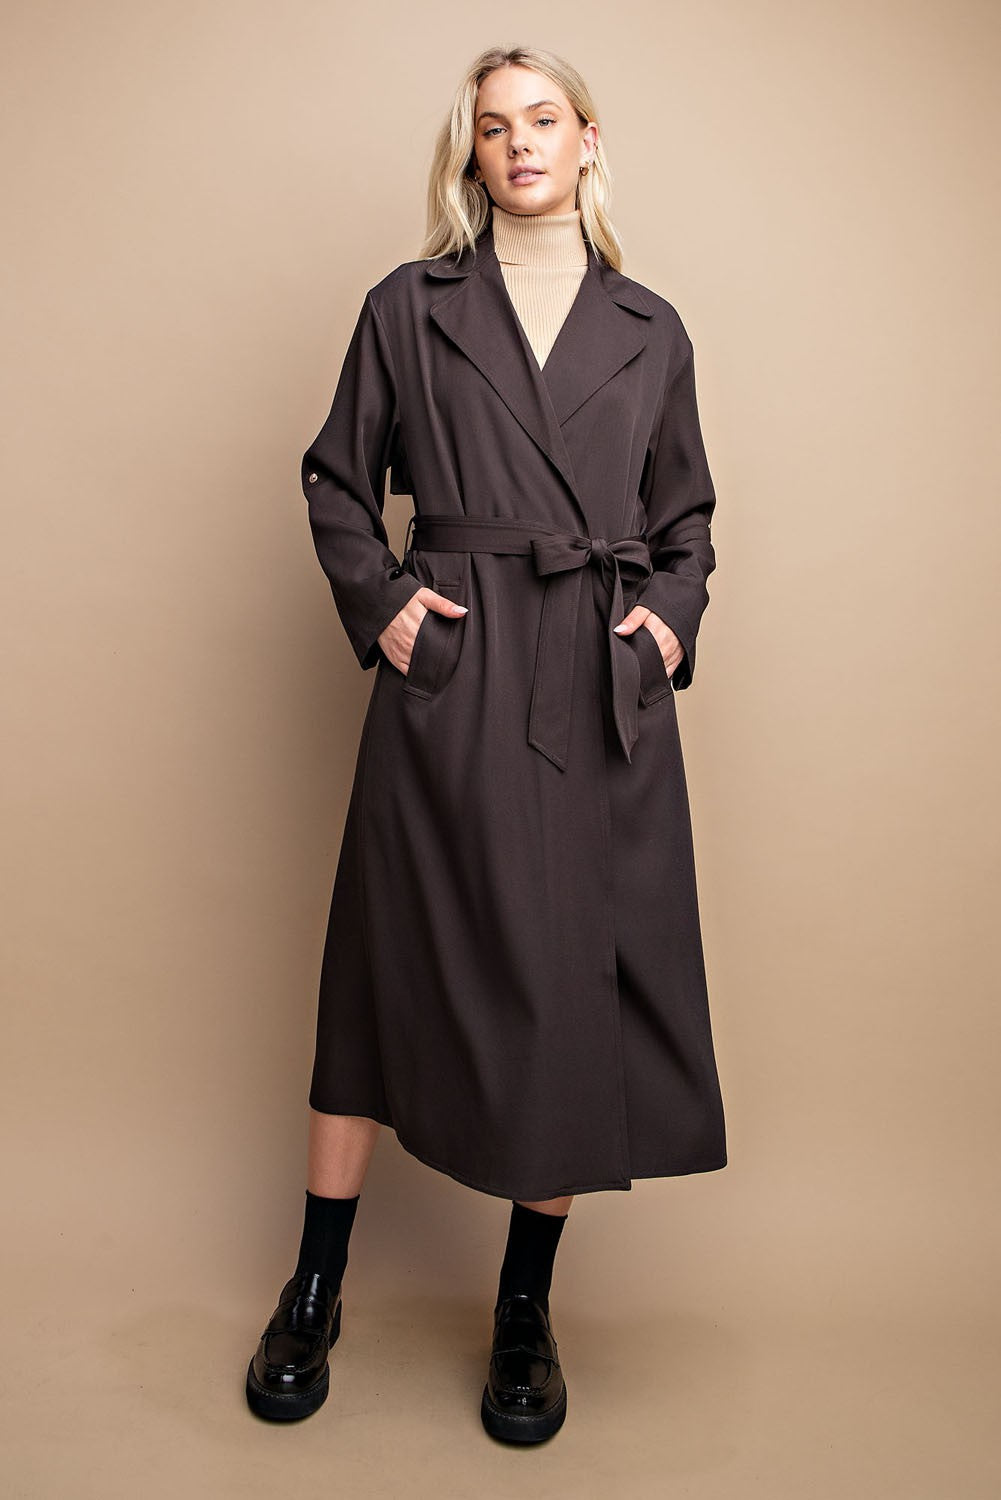 Roll Sleeve Lightweight Coat in Dk. Expresso